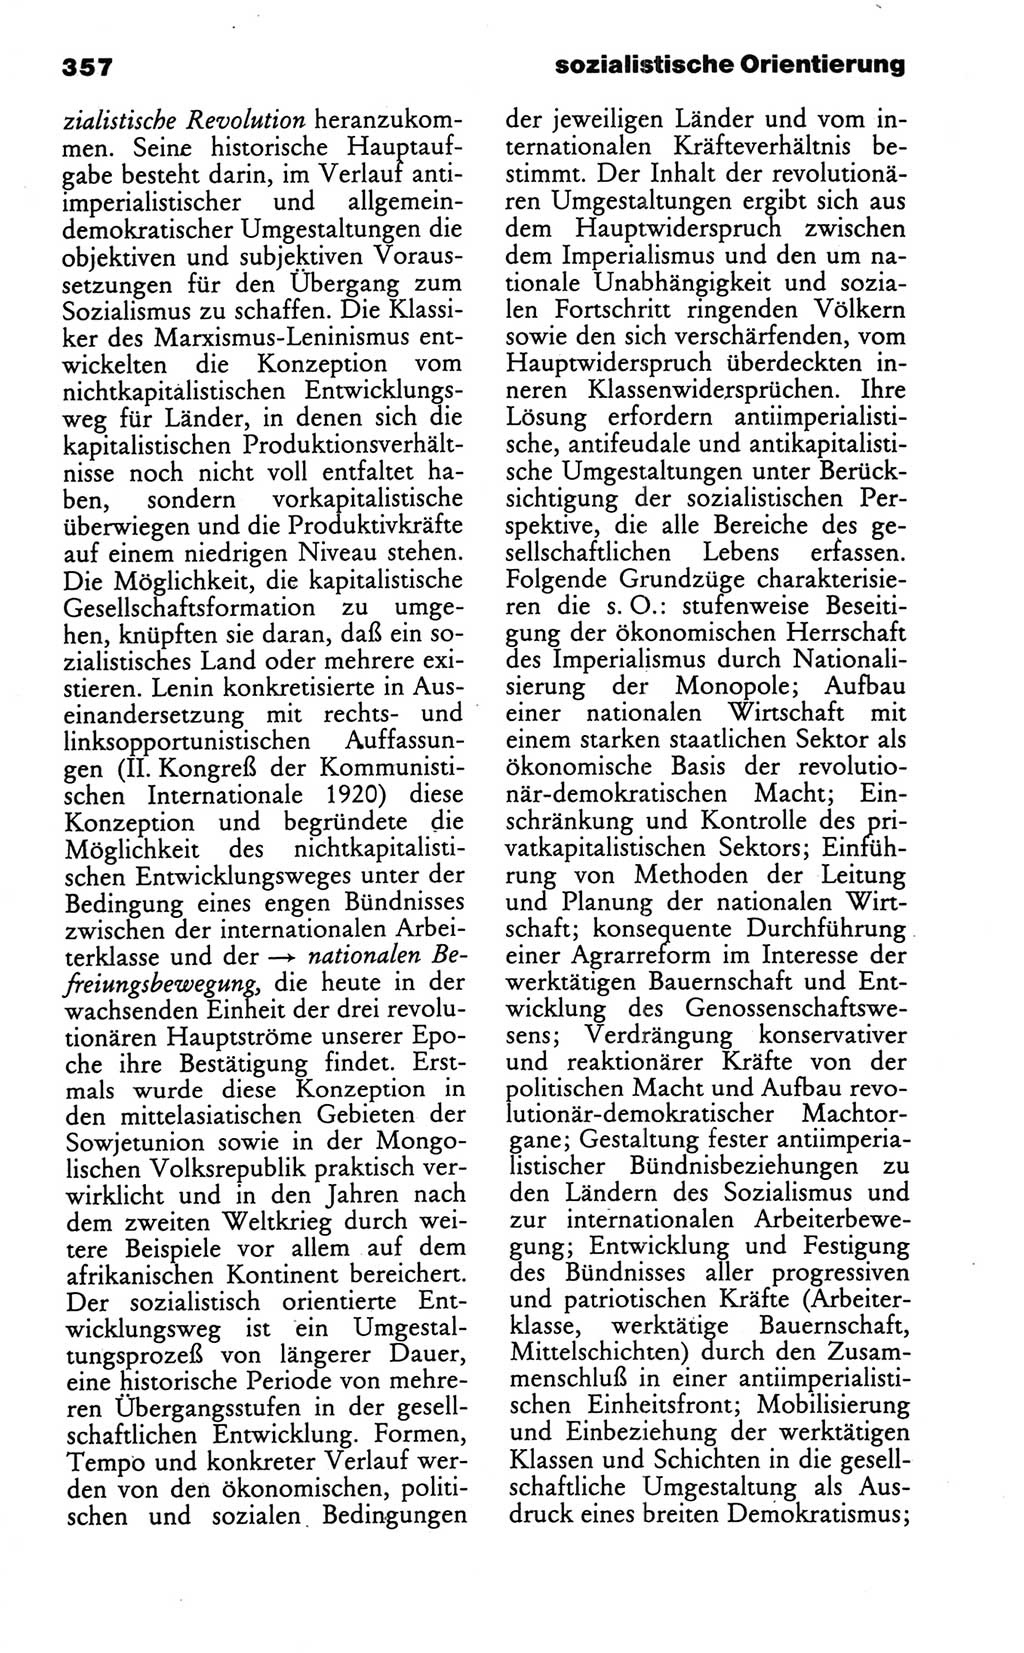 Wörterbuch des wissenschaftlichen Kommunismus [Deutsche Demokratische Republik (DDR)] 1986, Seite 357 (Wb. wiss. Komm. DDR 1986, S. 357)